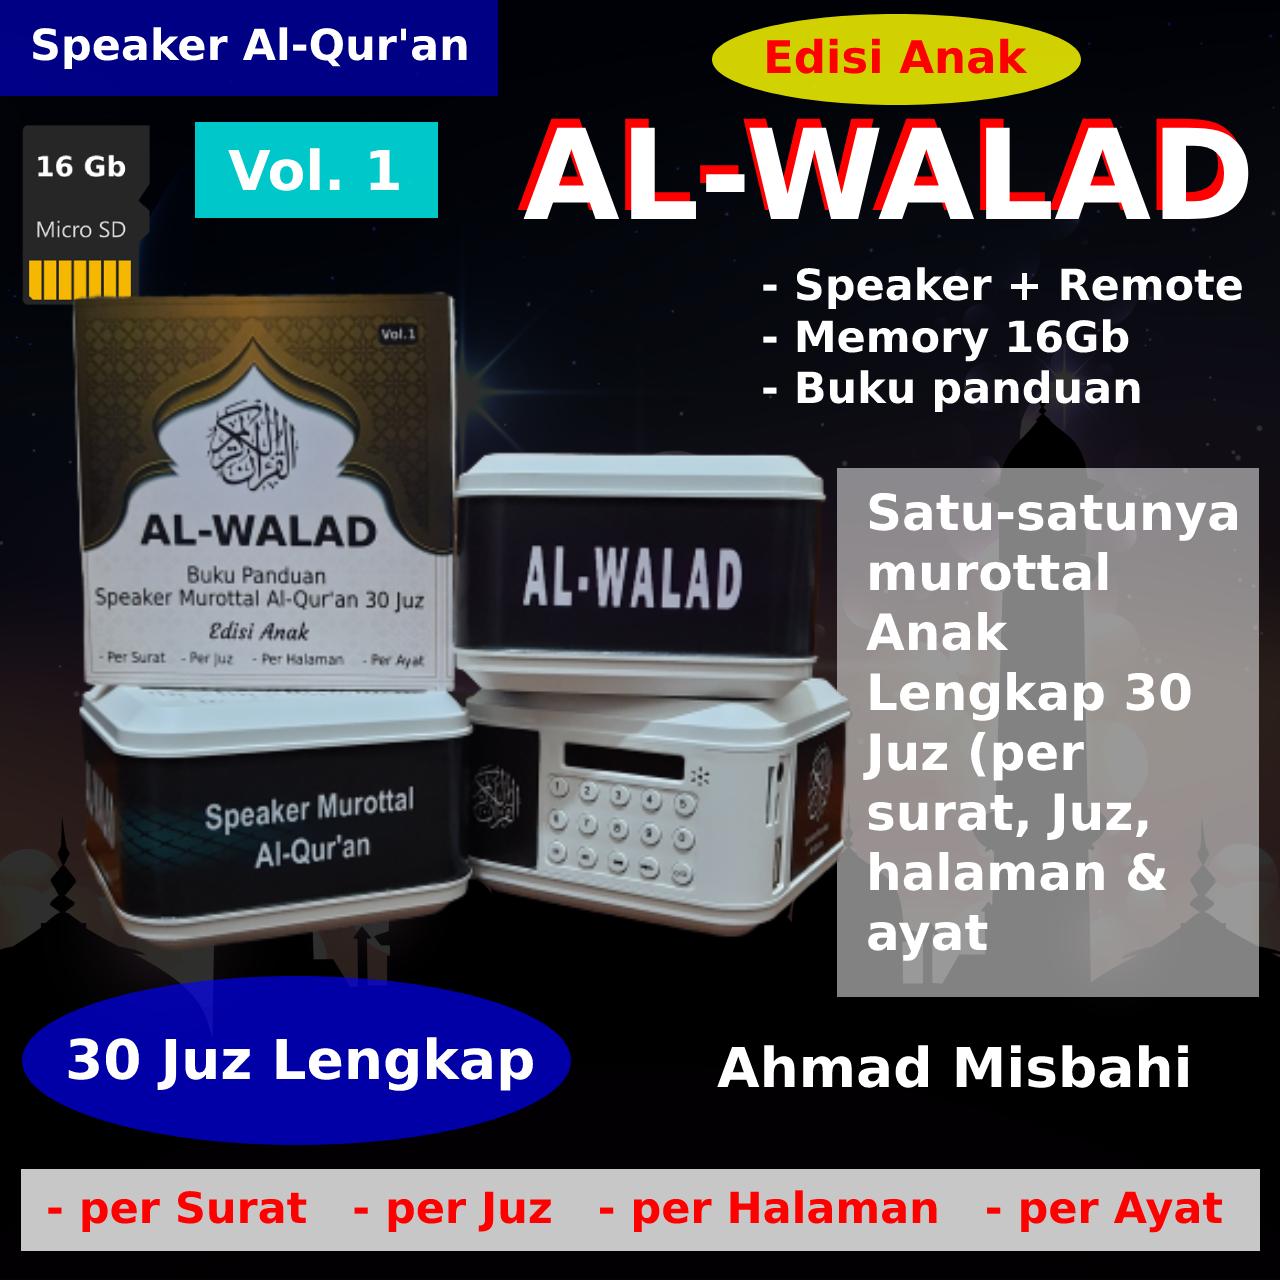 Distributor Speaker Murottal Al-Quran 30 Juz Lengkap  di Padang Silahkan WA ke 081-652-5432